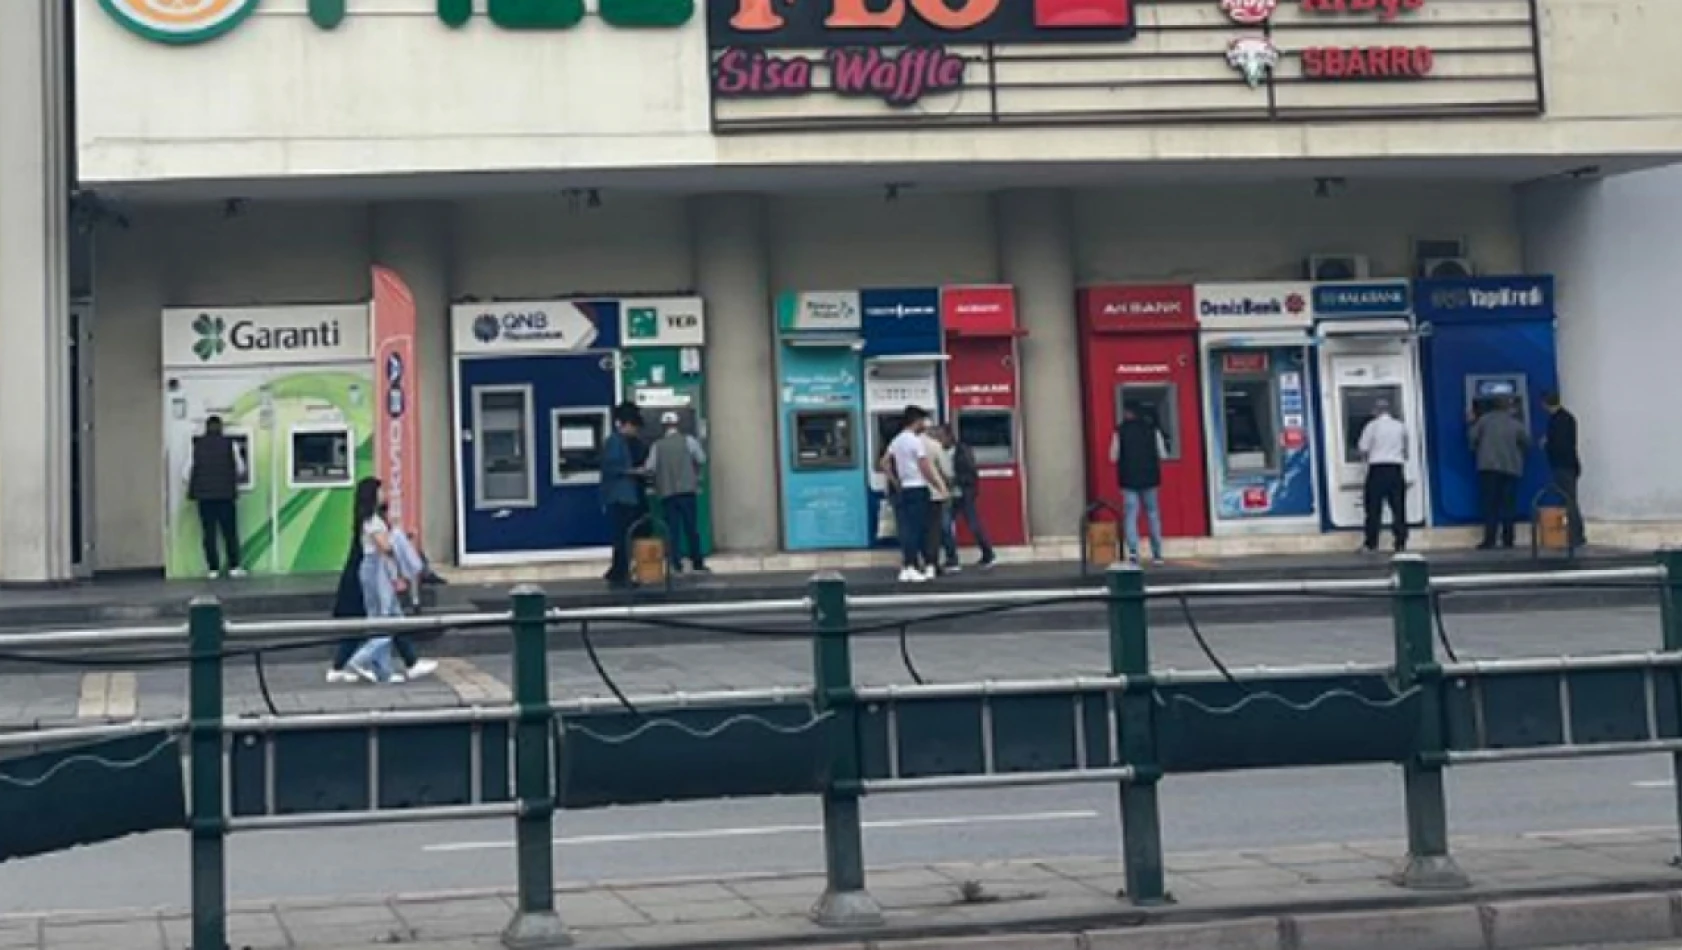 Kayseri'de ATM'ler değişiyor - Yeni sistem başlıyor!